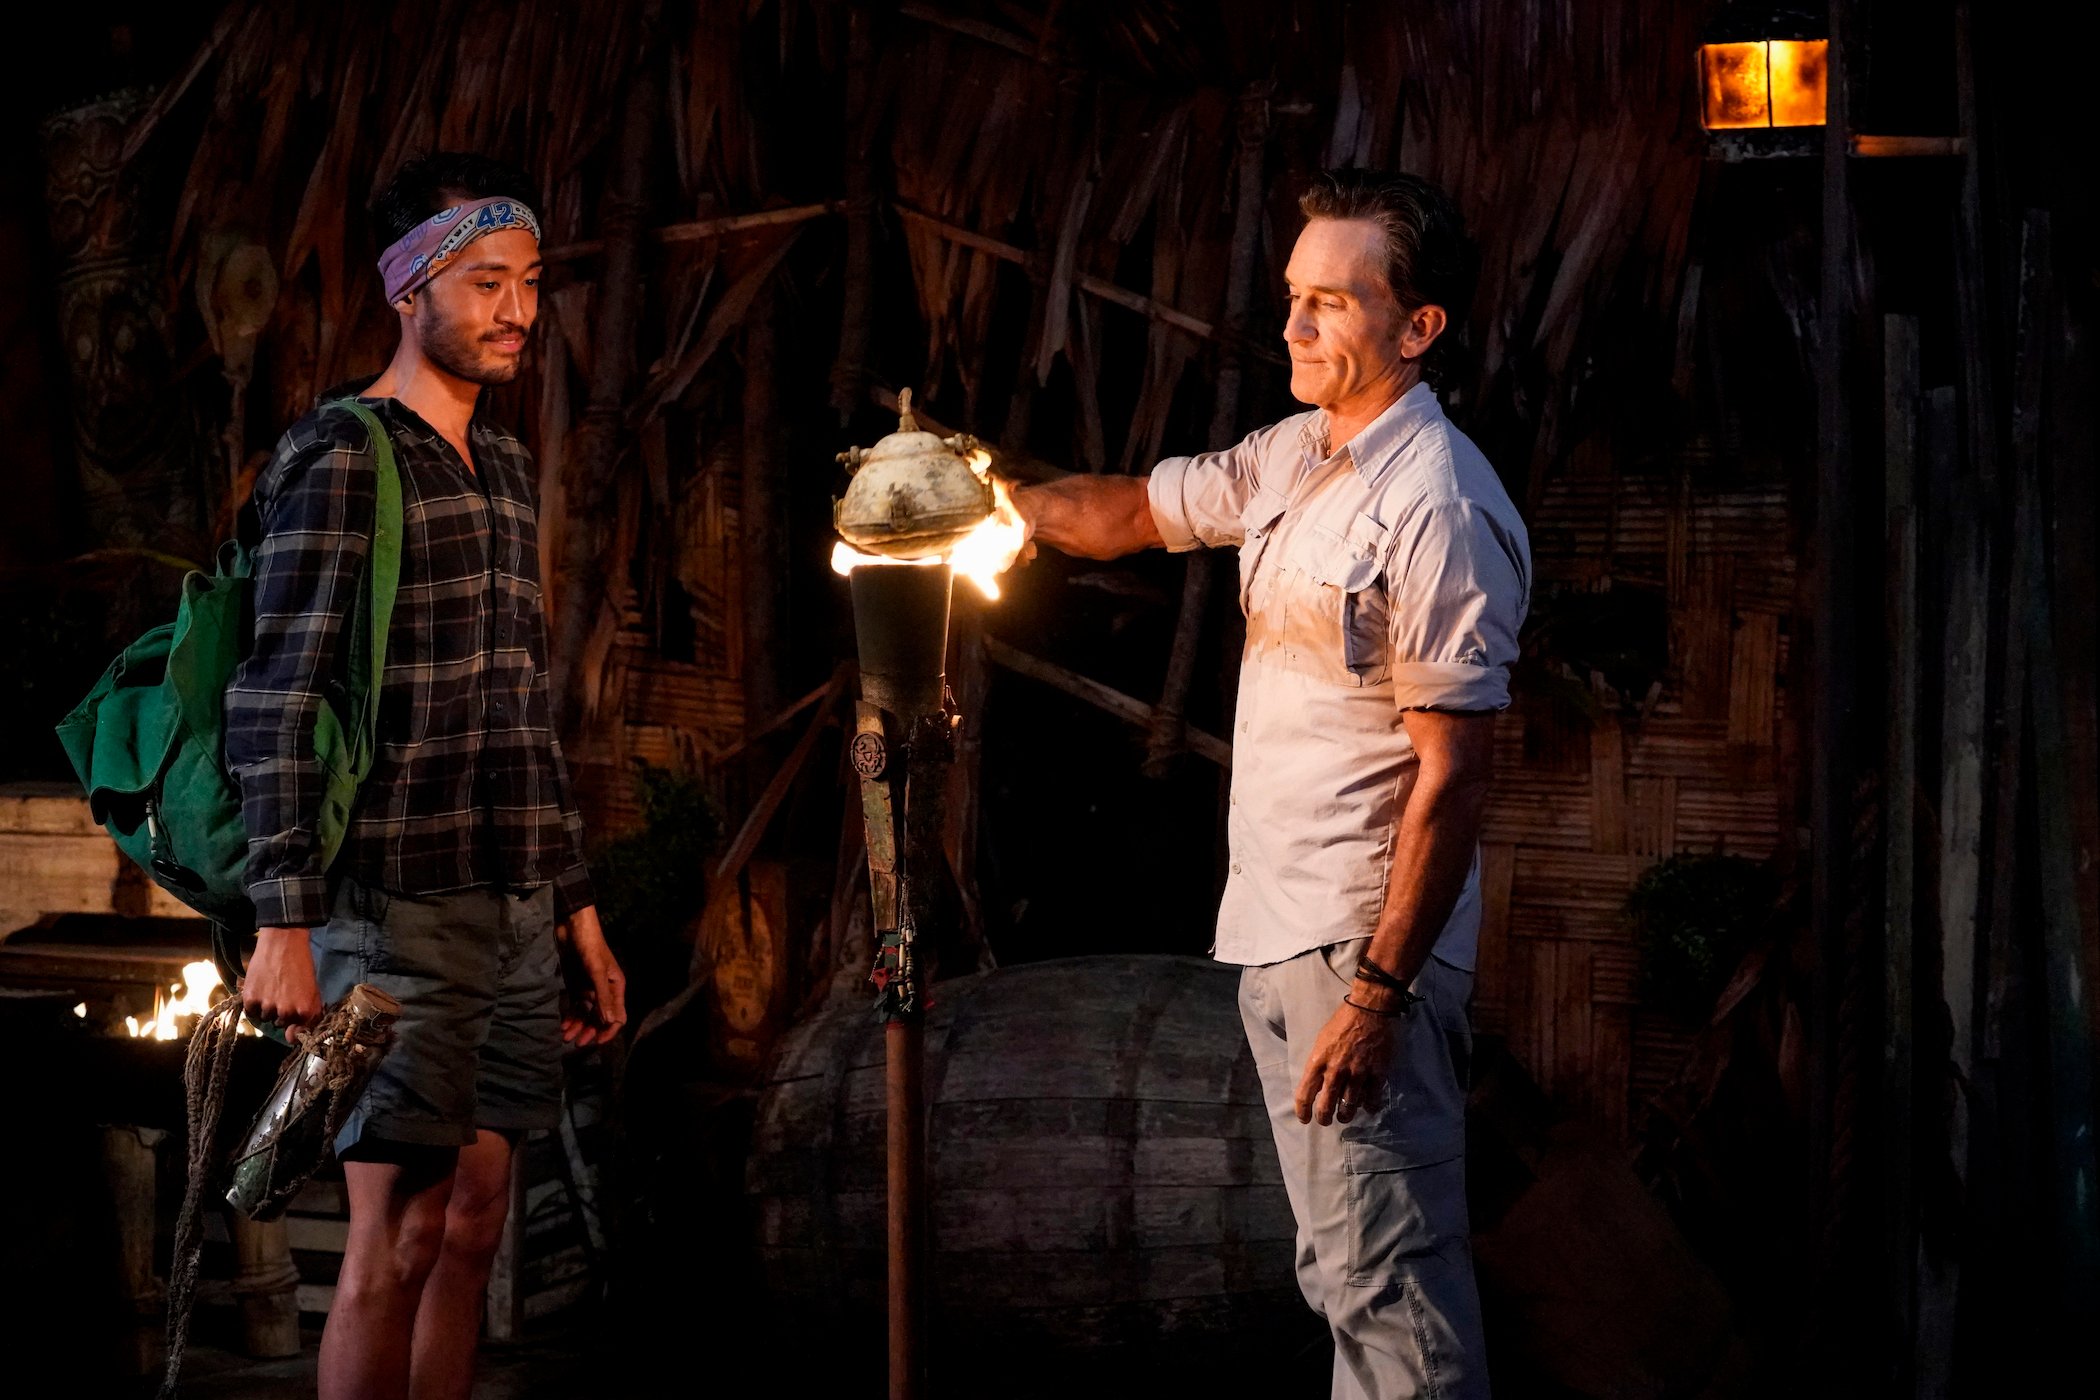 Jeff Probst extinguishing Hai's torch in 'Survivor' Season 42